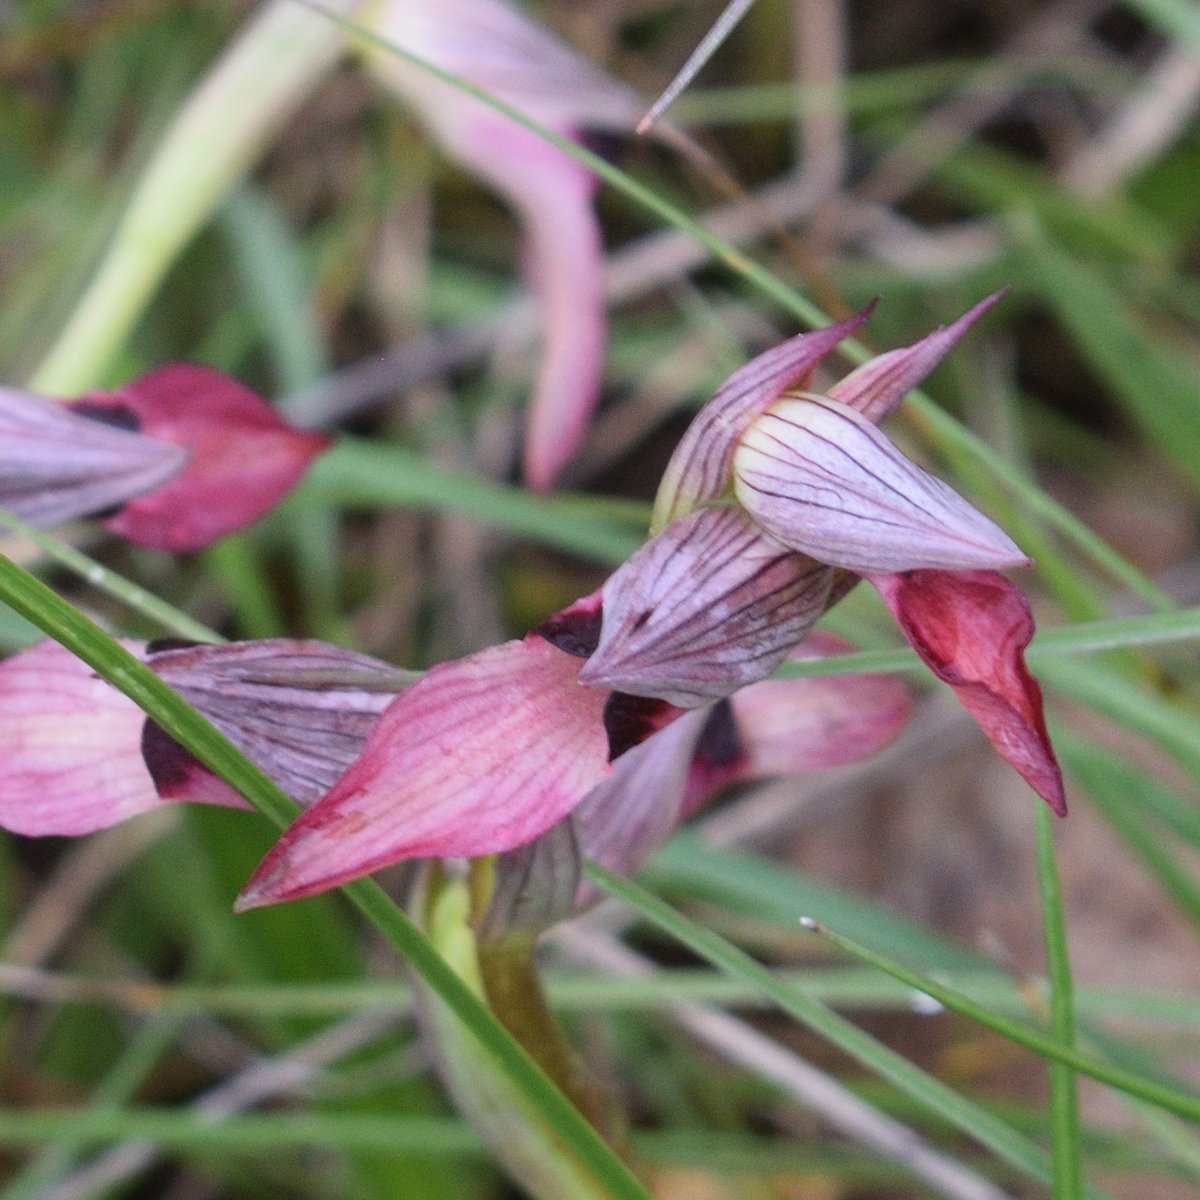 2e sortie Orchidées dans le Tarn
Temps froid et humide mais 10 espèces identifiées, en voici un aperçu

Serapias lingua

#InonderTwitterDePlantes